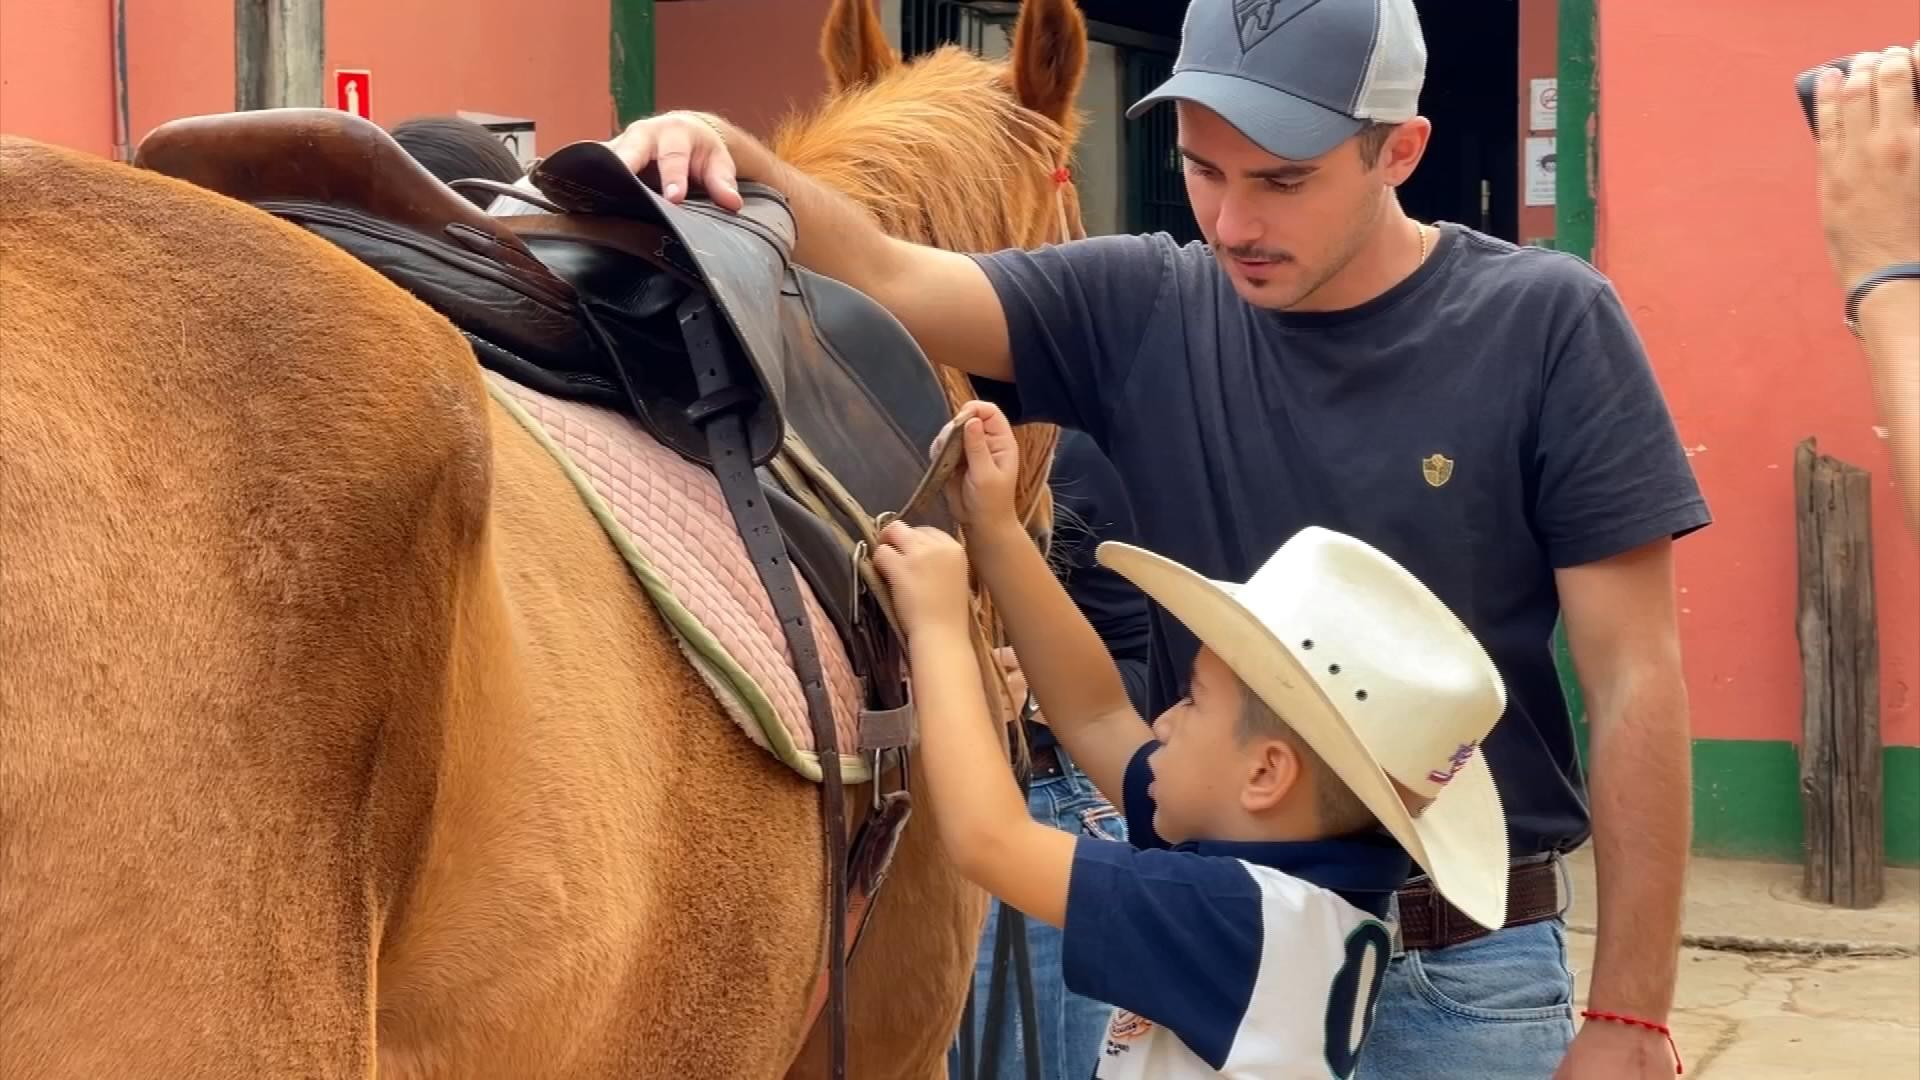 Crianças passam férias em contato com cavalos